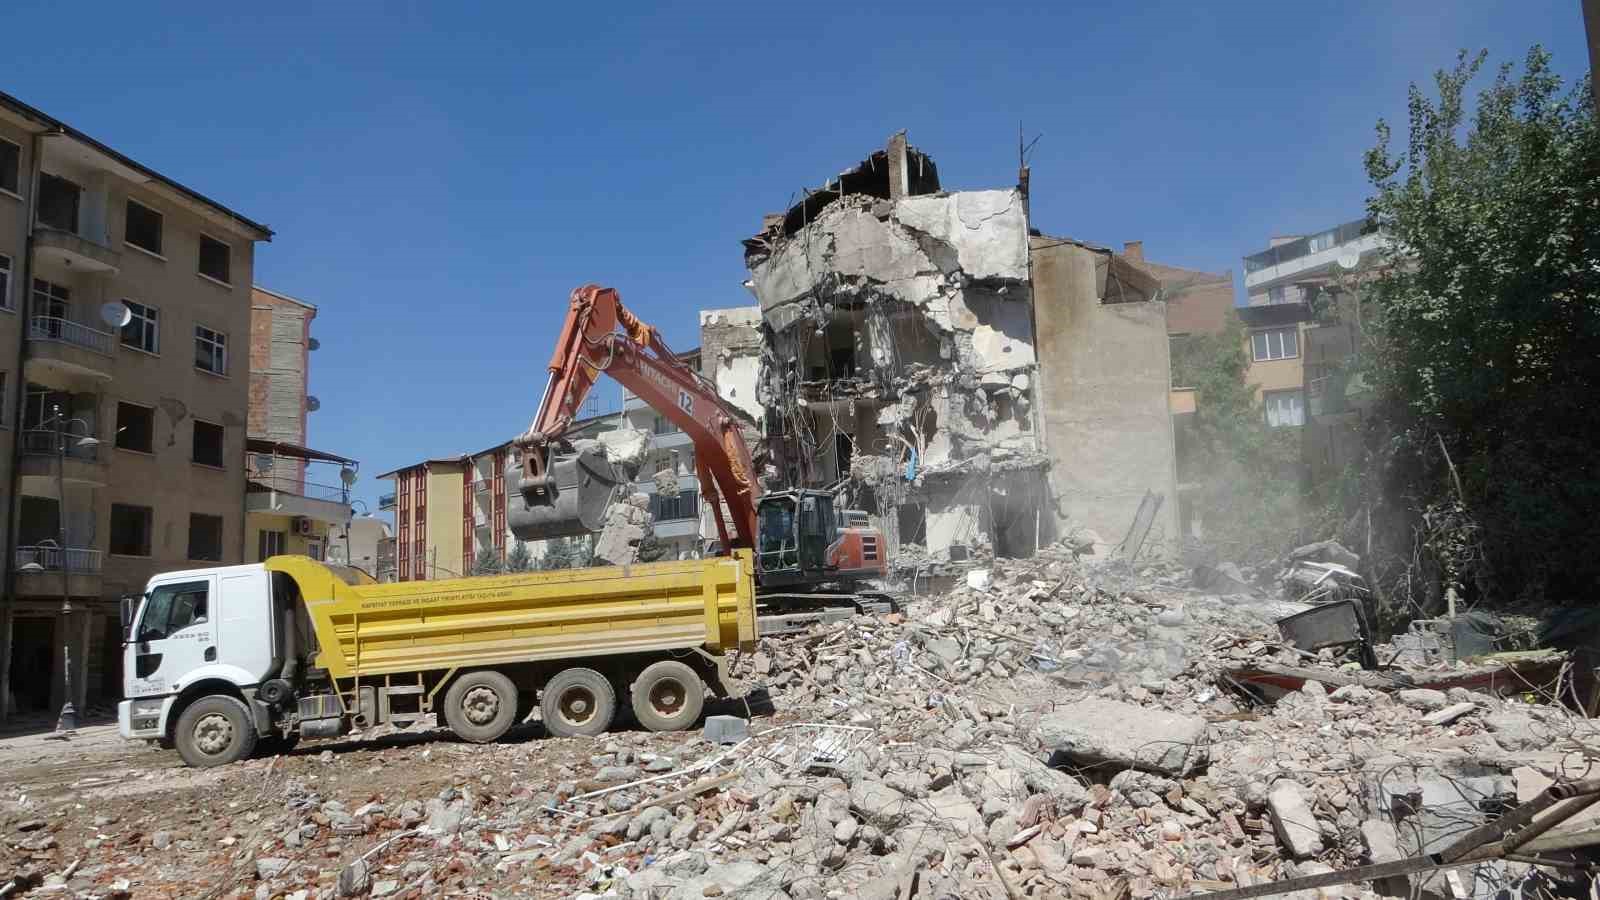 1 günde üç depremle sarsılan şehirde ağır hasarlı binaların yıkımlarına hız verildi